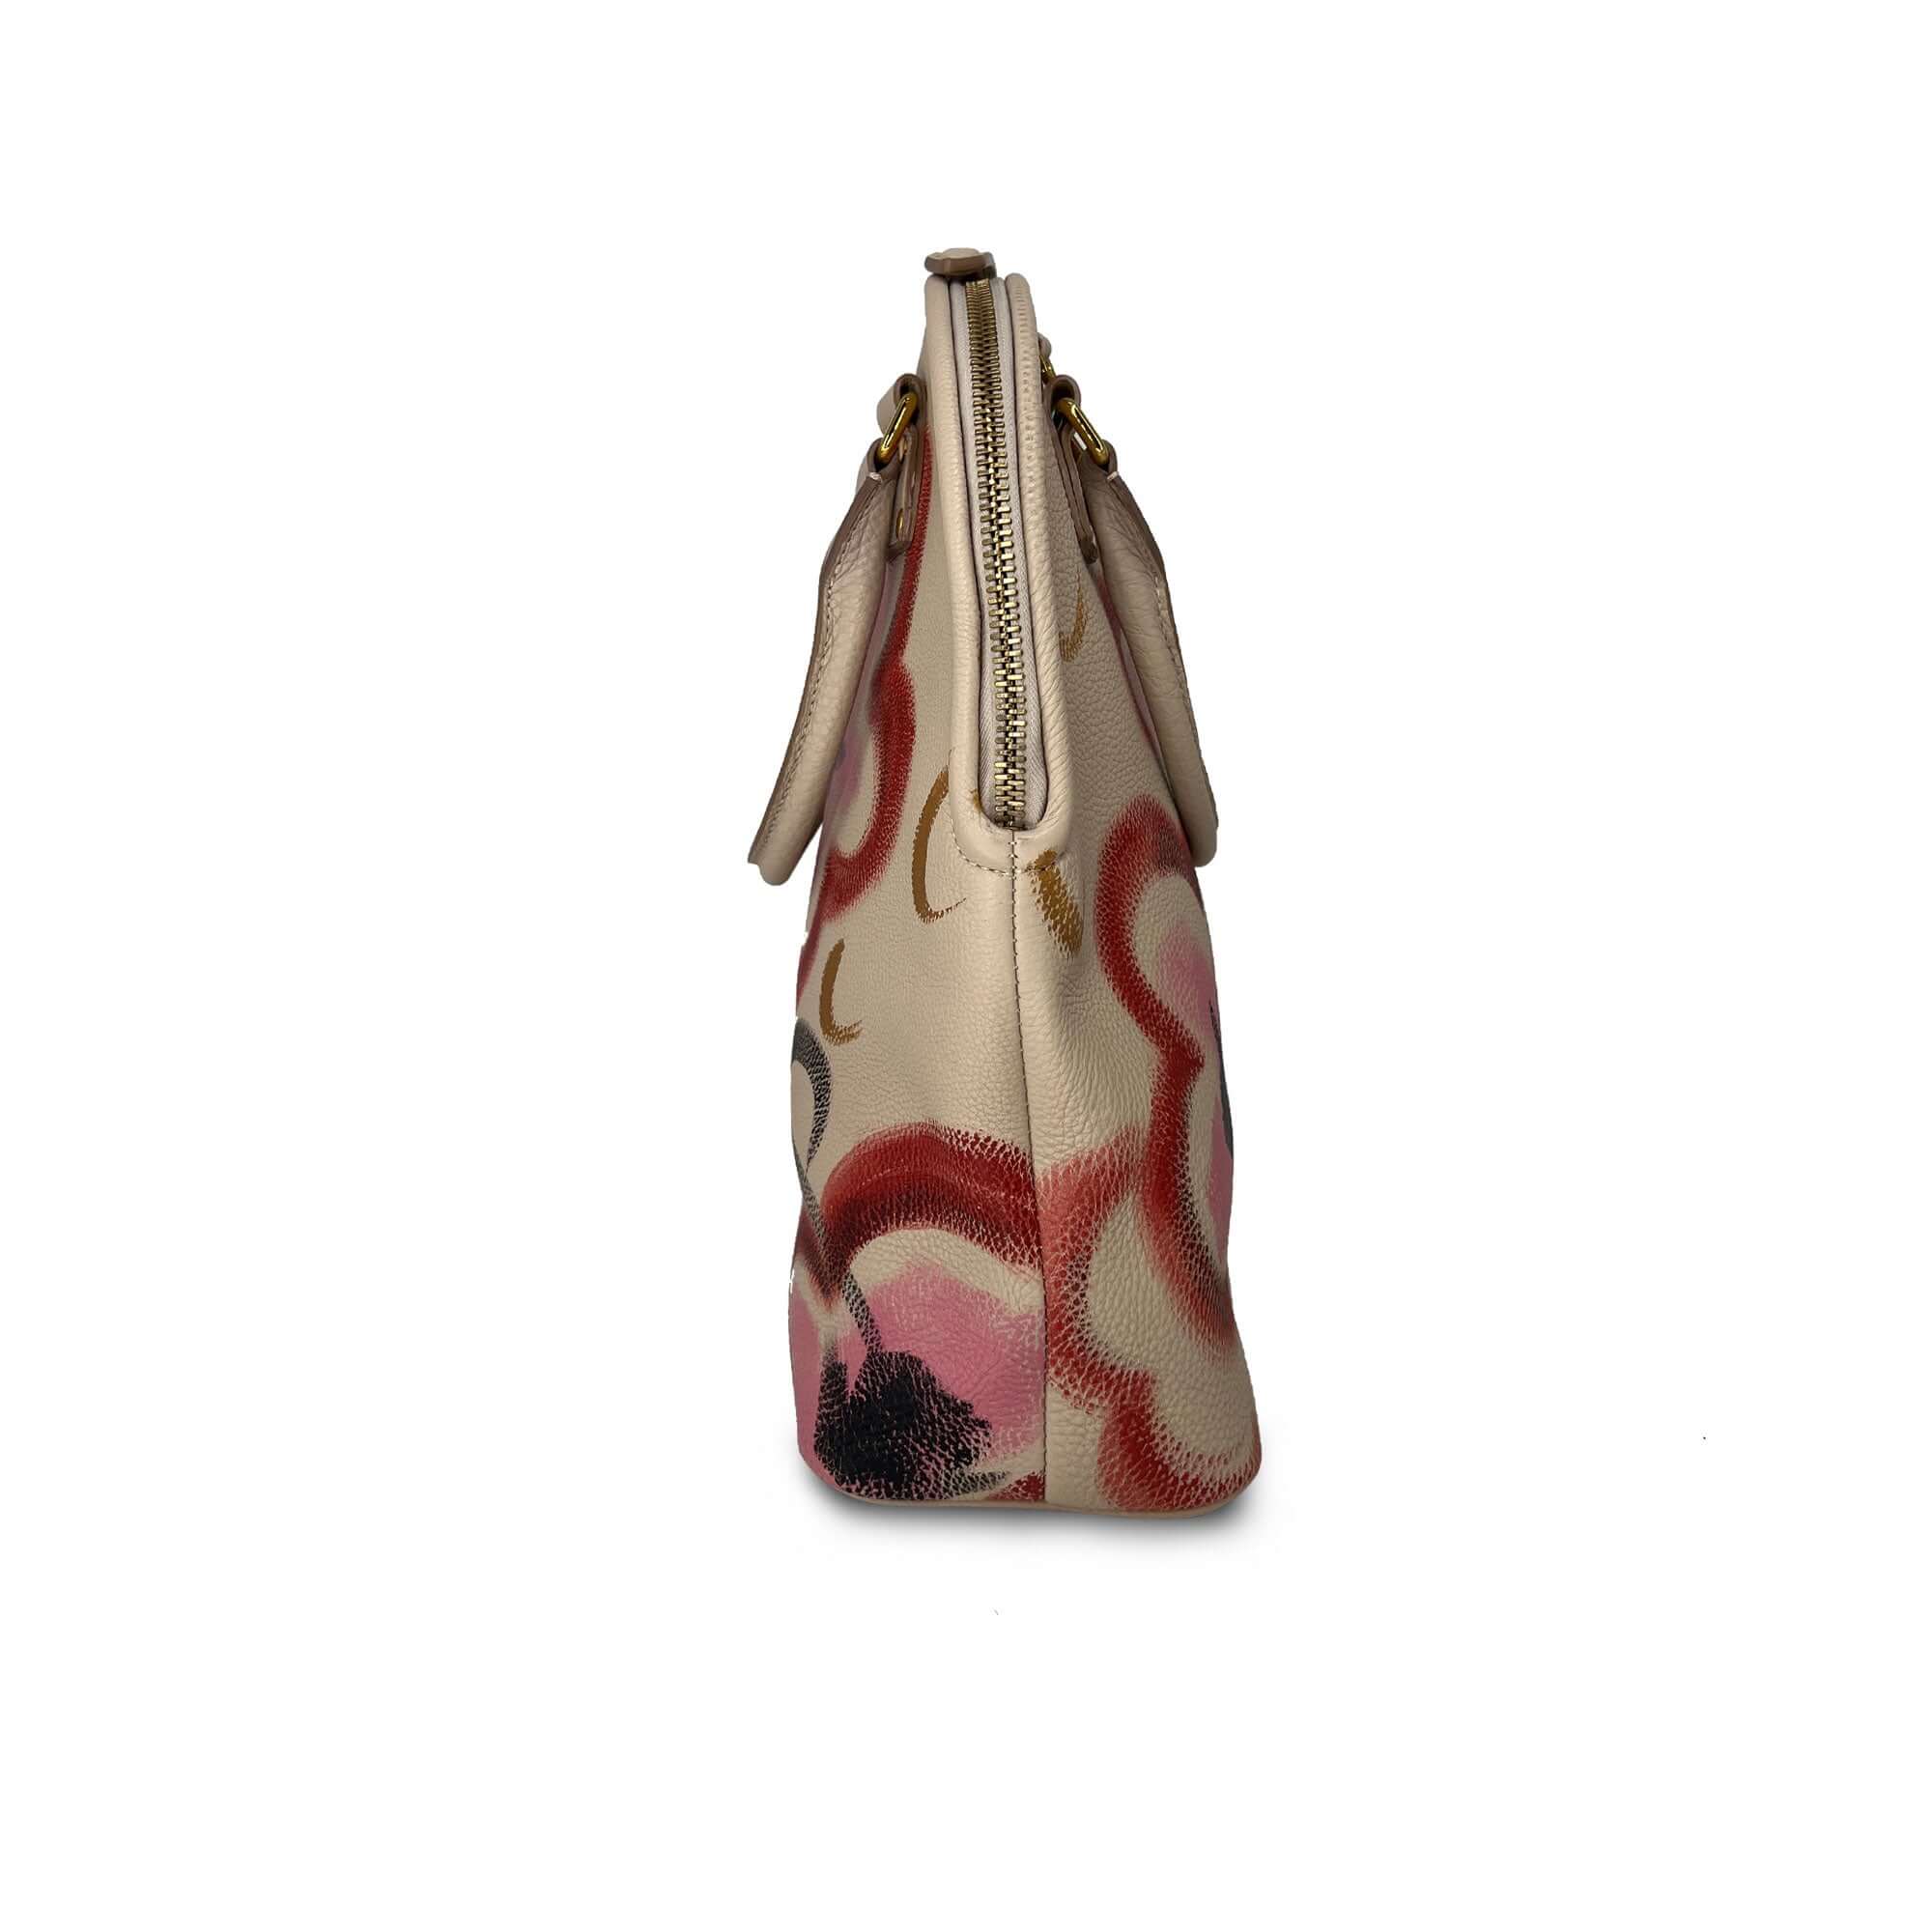 Burberry Prorsum grainy calfskin bag